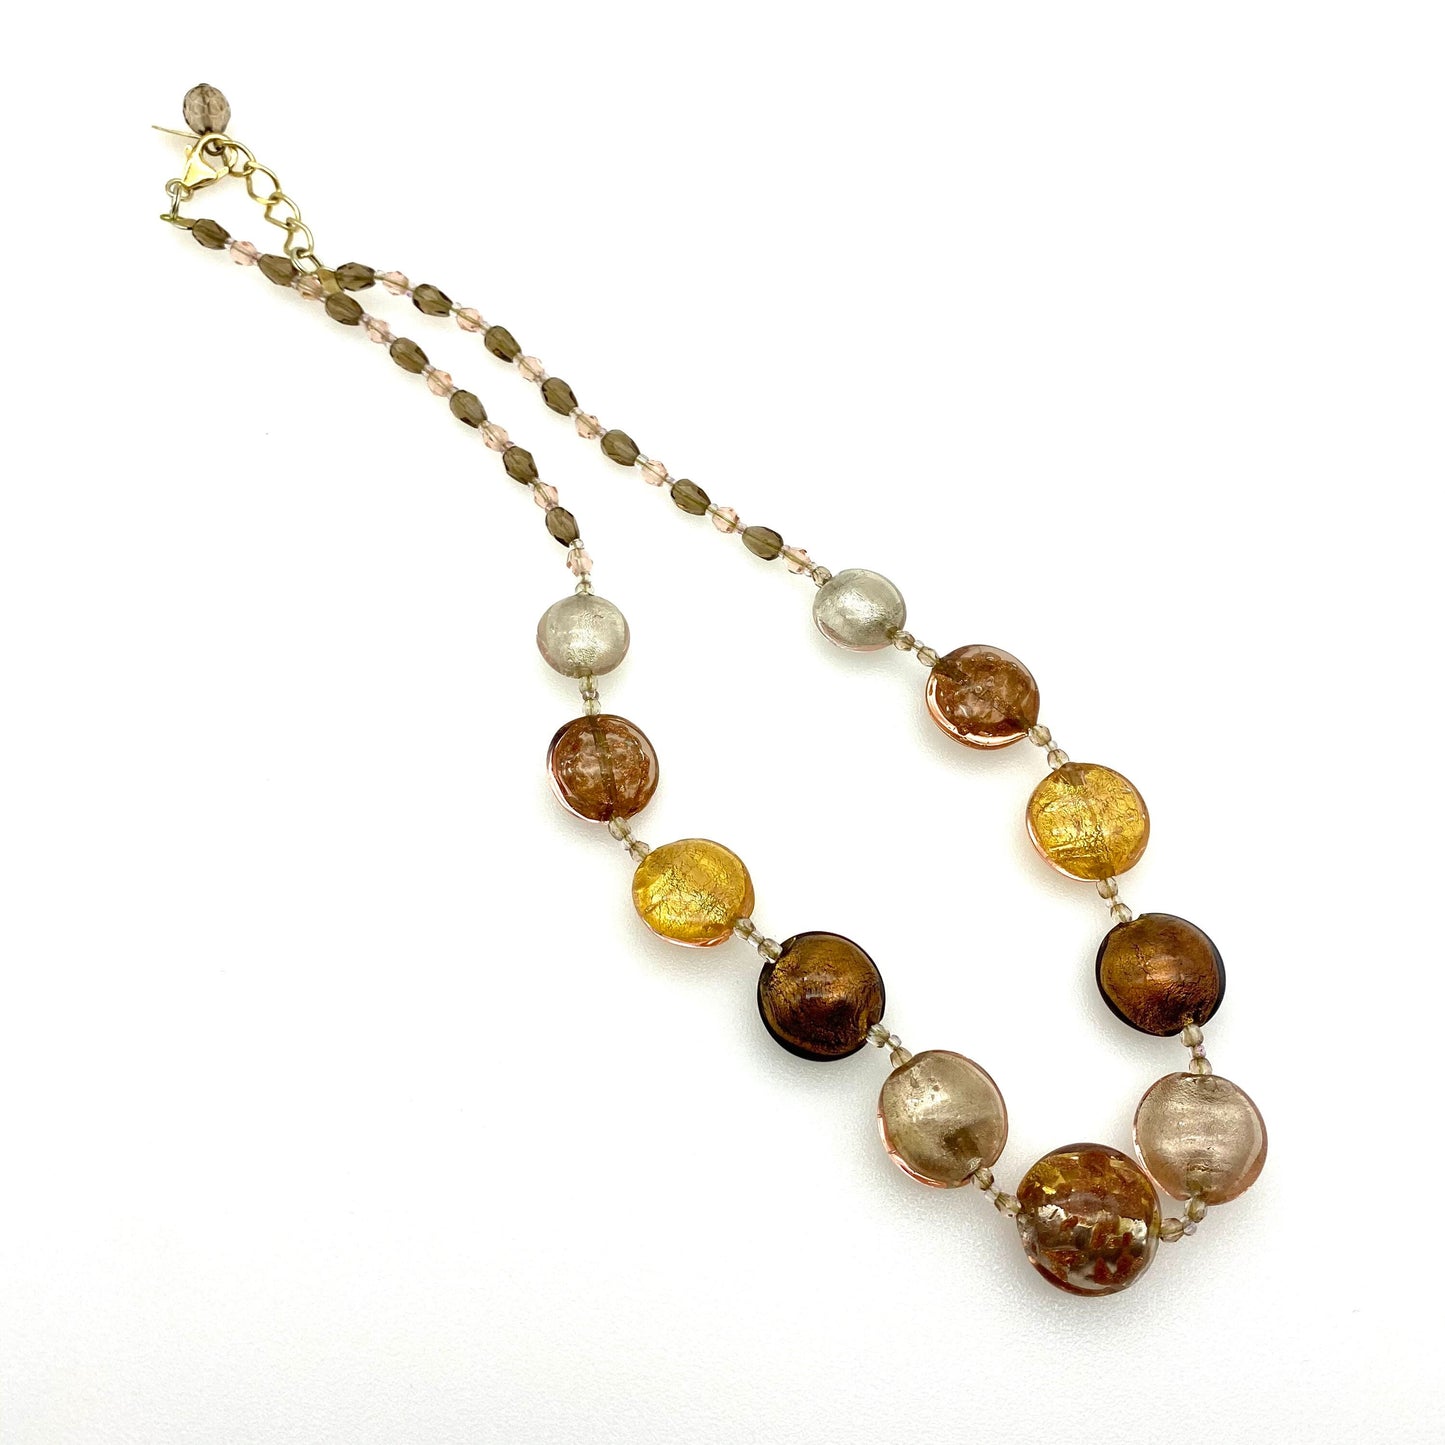 Le Perle 925 Vermeil, Or, Blanc et Cuivre Verre de Murano Vénitien, Fluss de Cuivre et Collier de Perles de Verre à Facettes